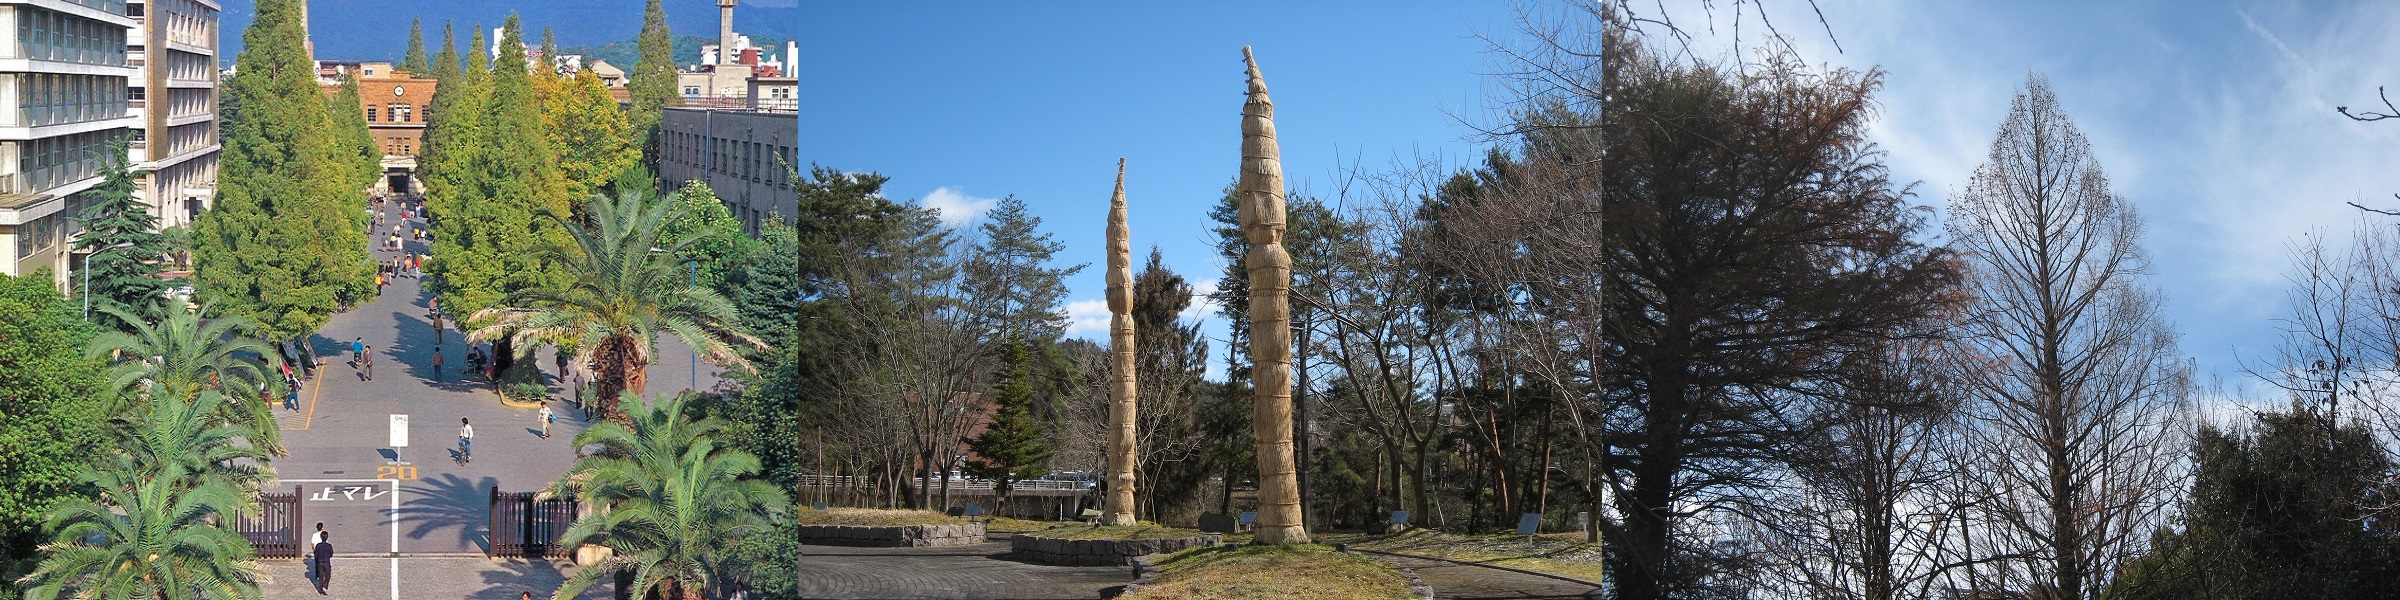 広島大学の象徴となる樹木